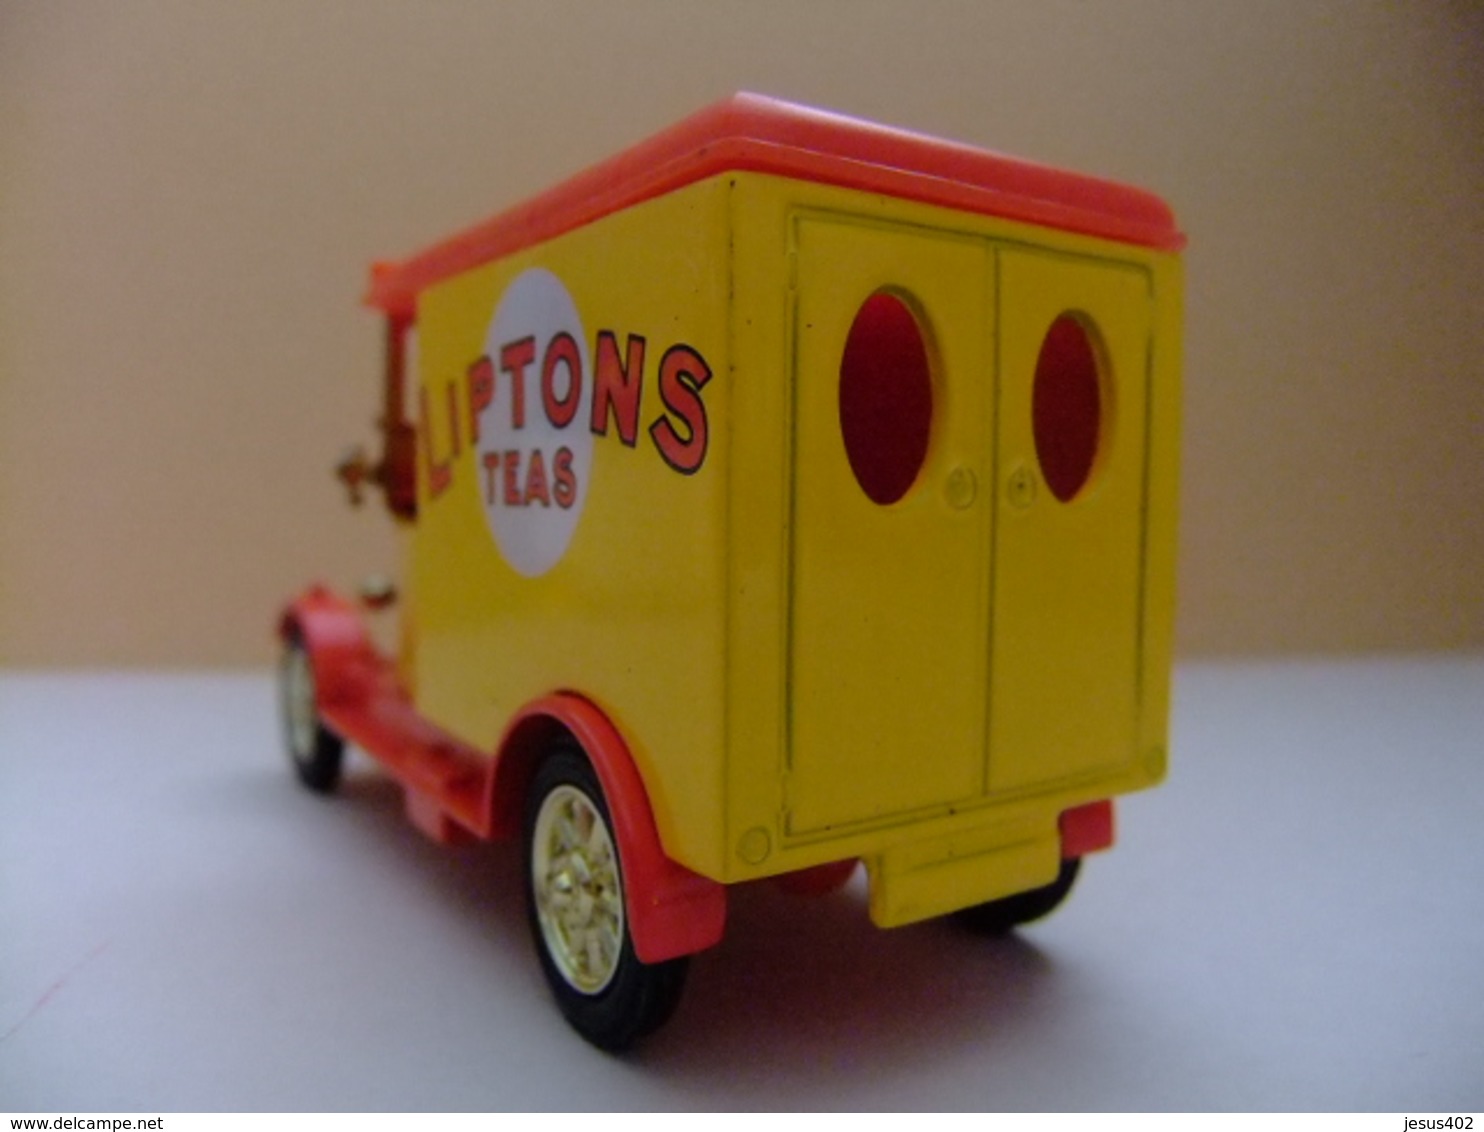 CORGI TOYS CAMION Con Publicidad LIPTONS TEAS - Corgi Toys